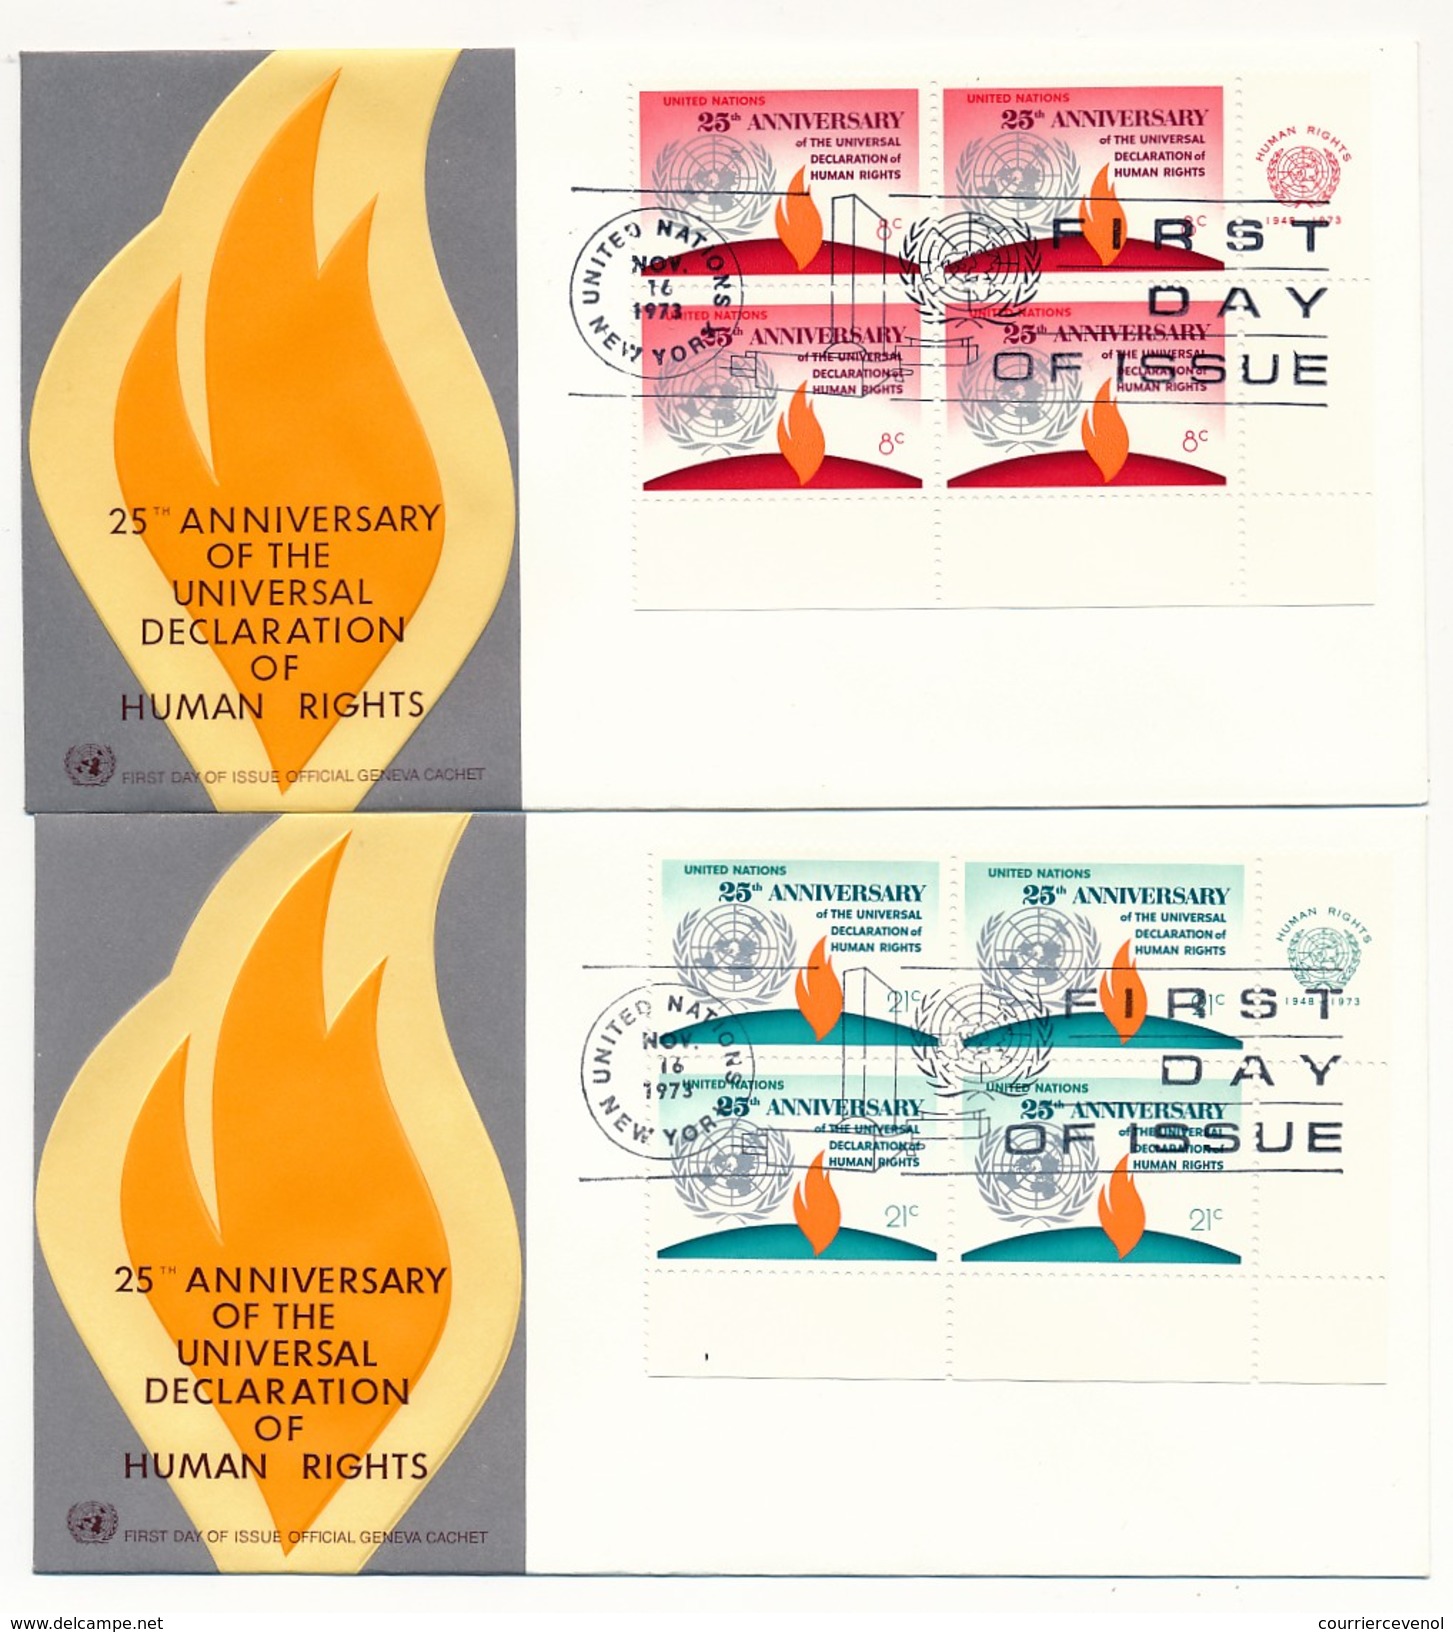 NATIONS UNIES - 10 Enveloppes FDC - 25eme Anniversaire Déclaration Des Droits De L'Homme - New York - Genève - 1973 - VN